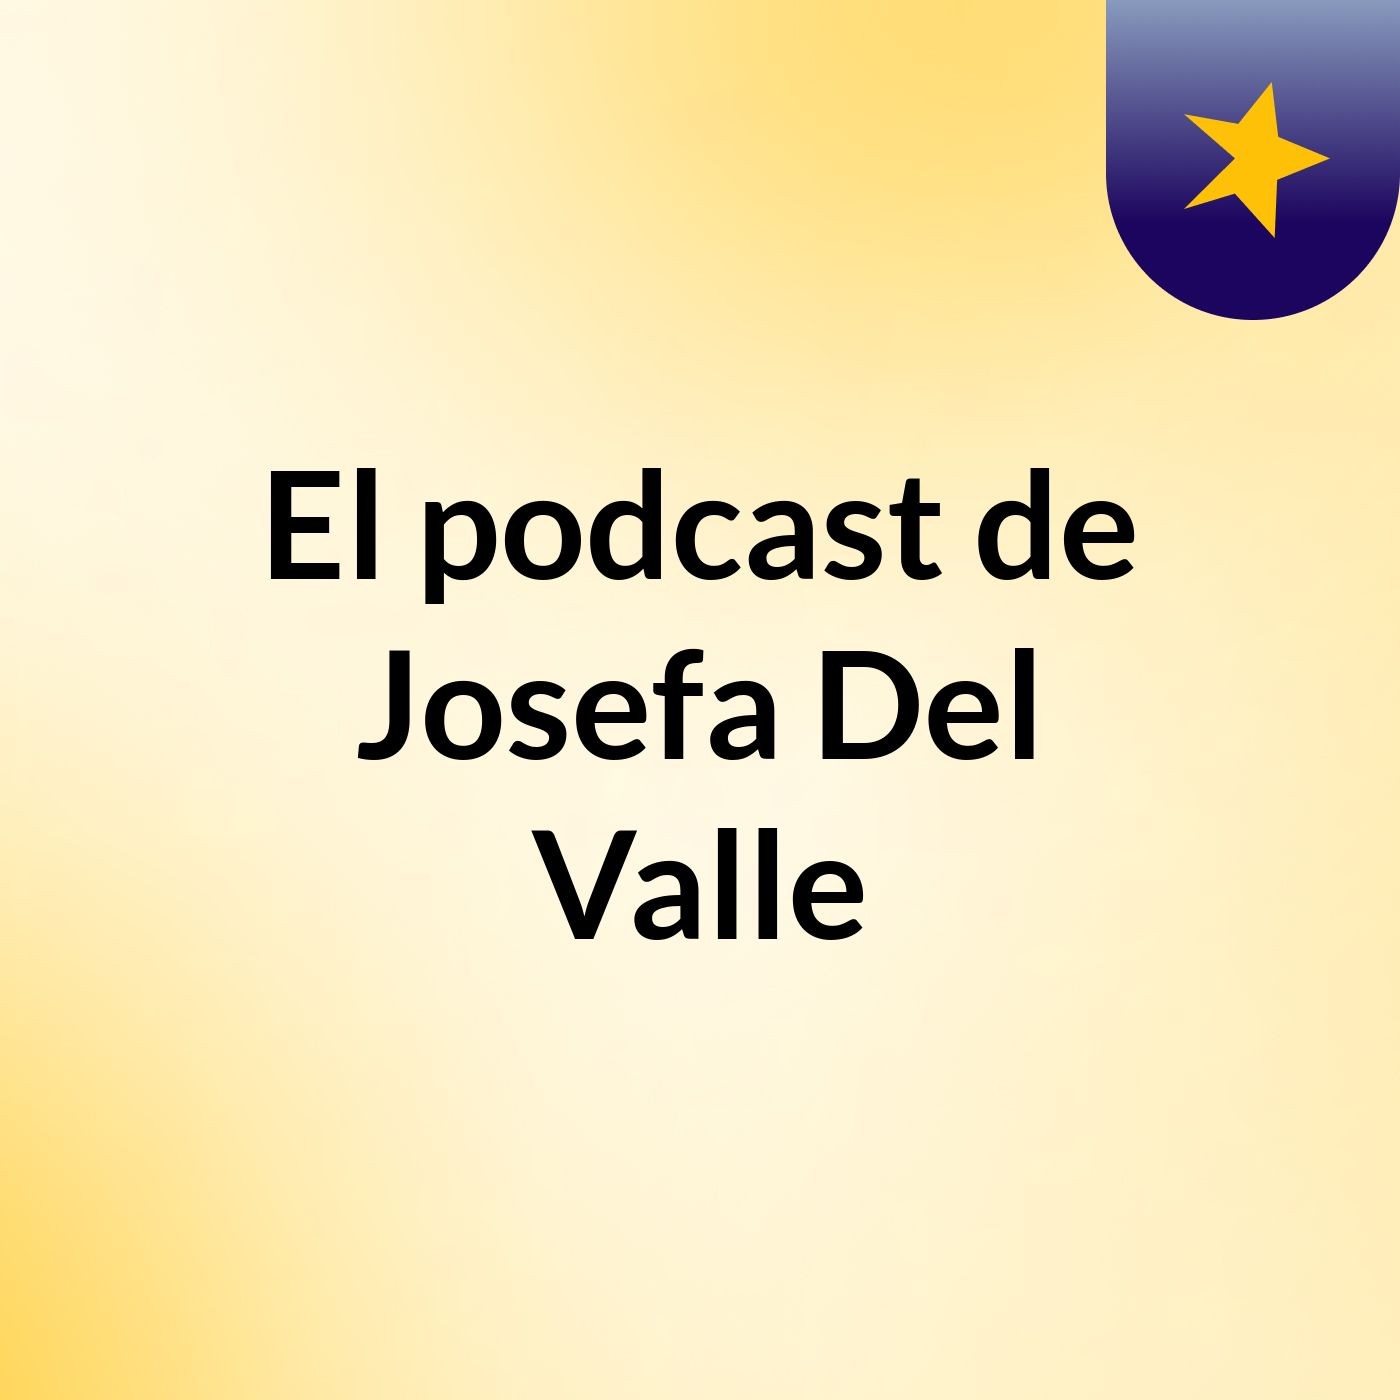 El podcast de Josefa Del Valle